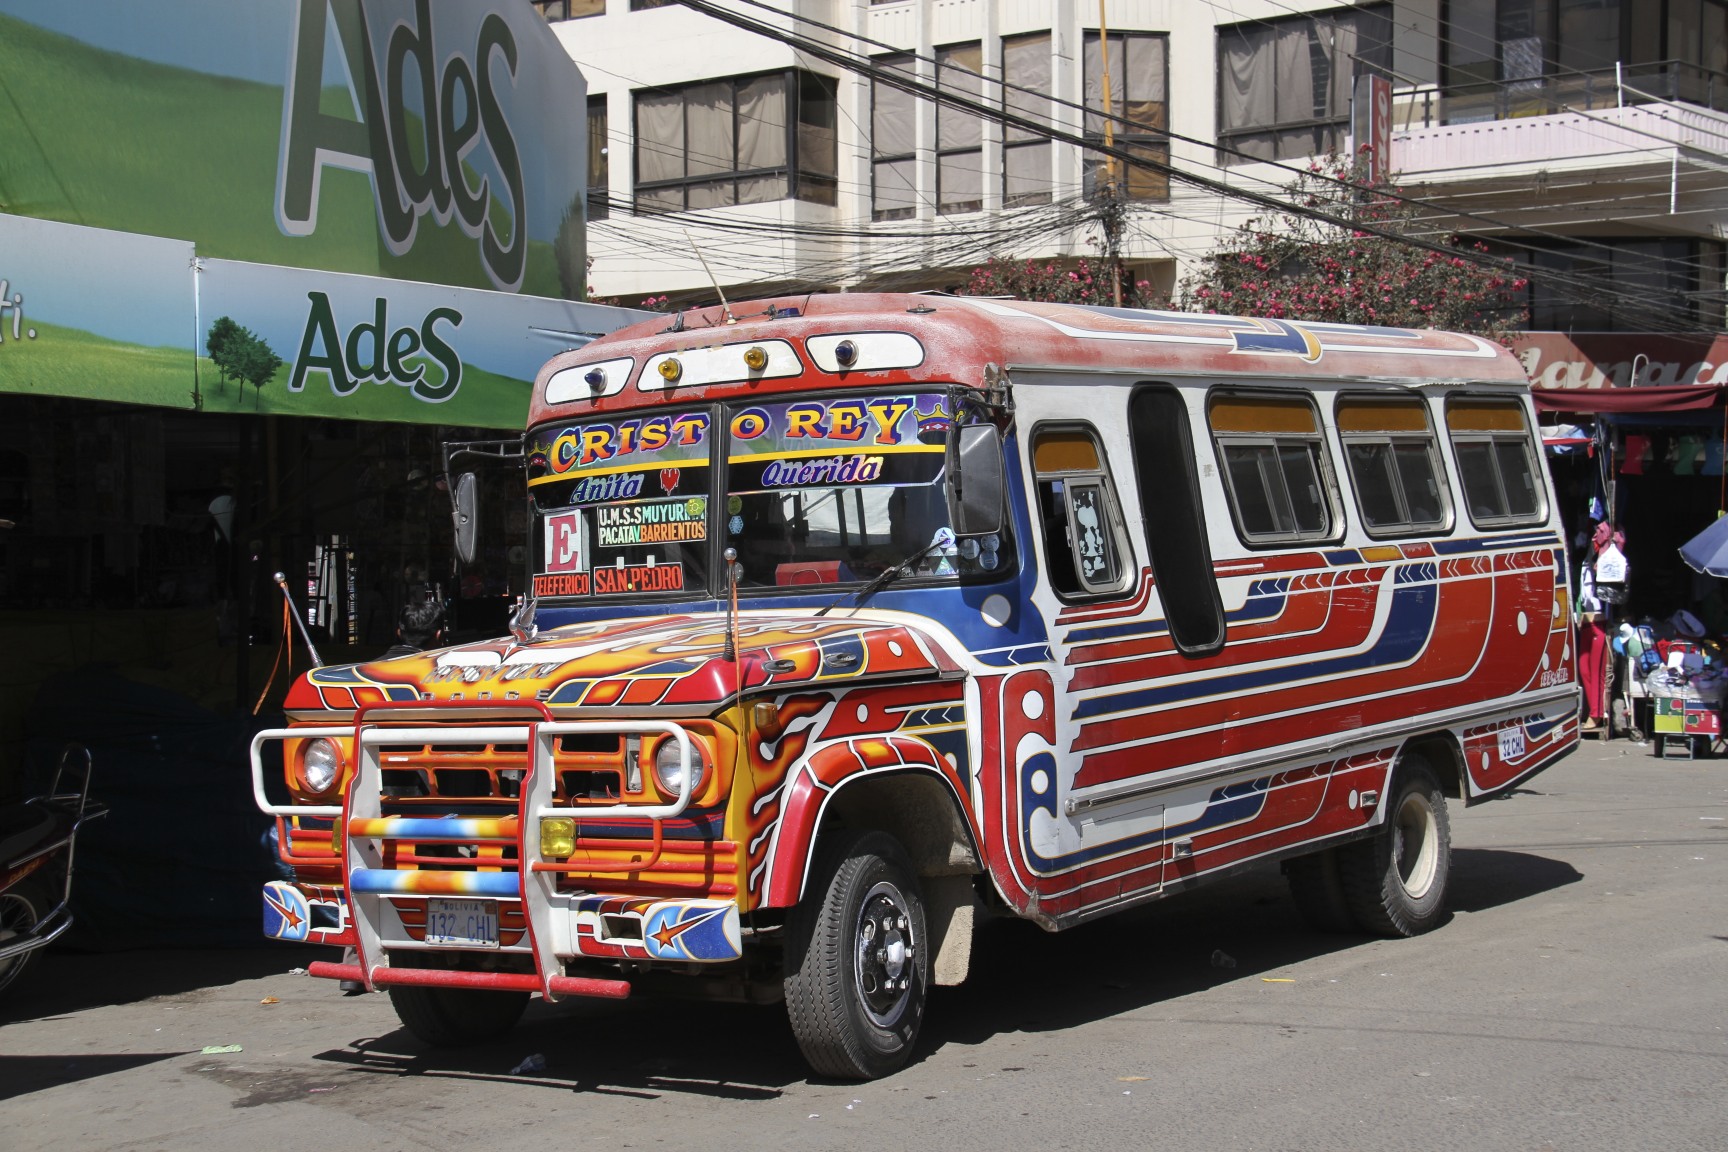 Résultat de recherche d'images pour "bolivian bus"